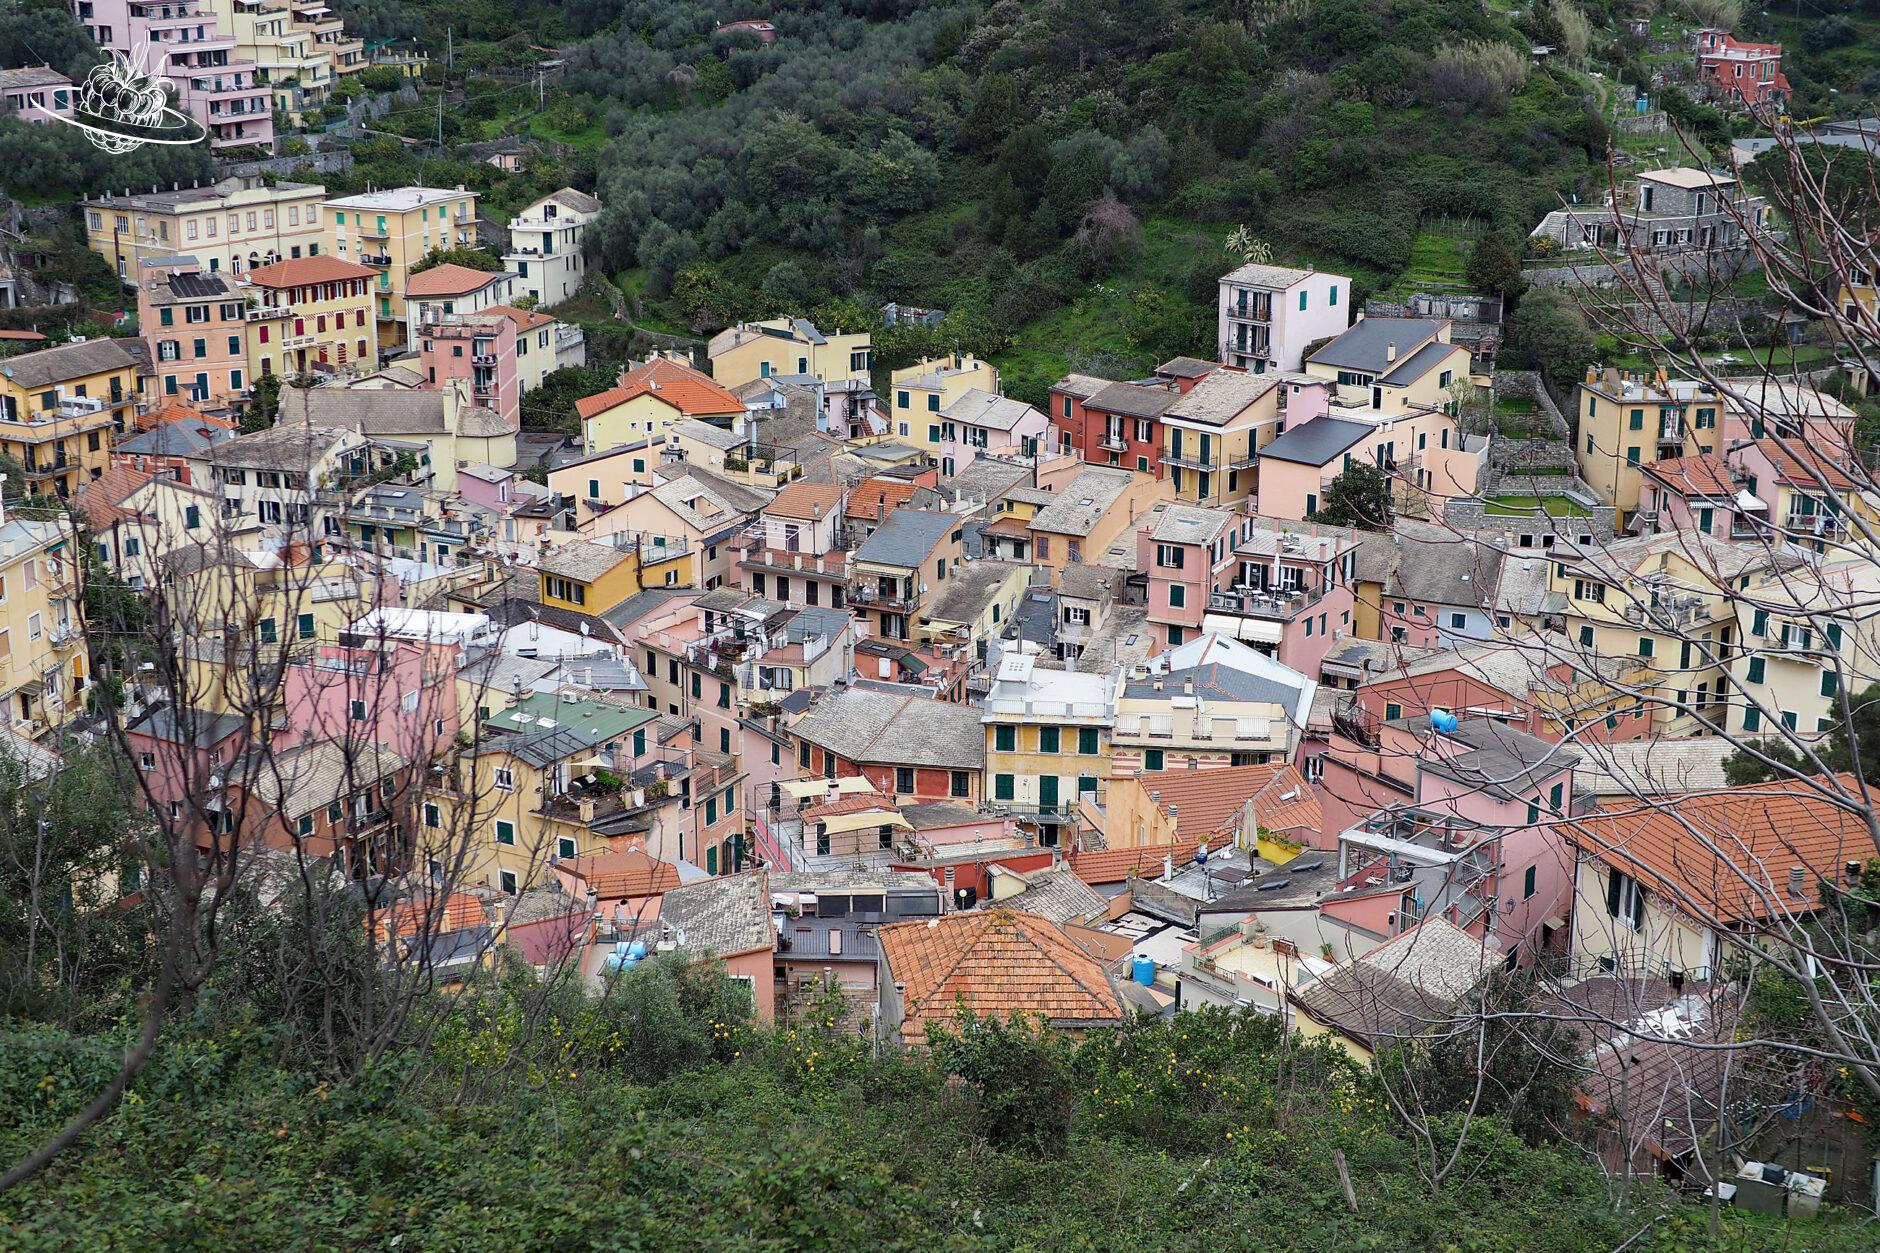 Blick auf das farbige Dorf von Monterosso